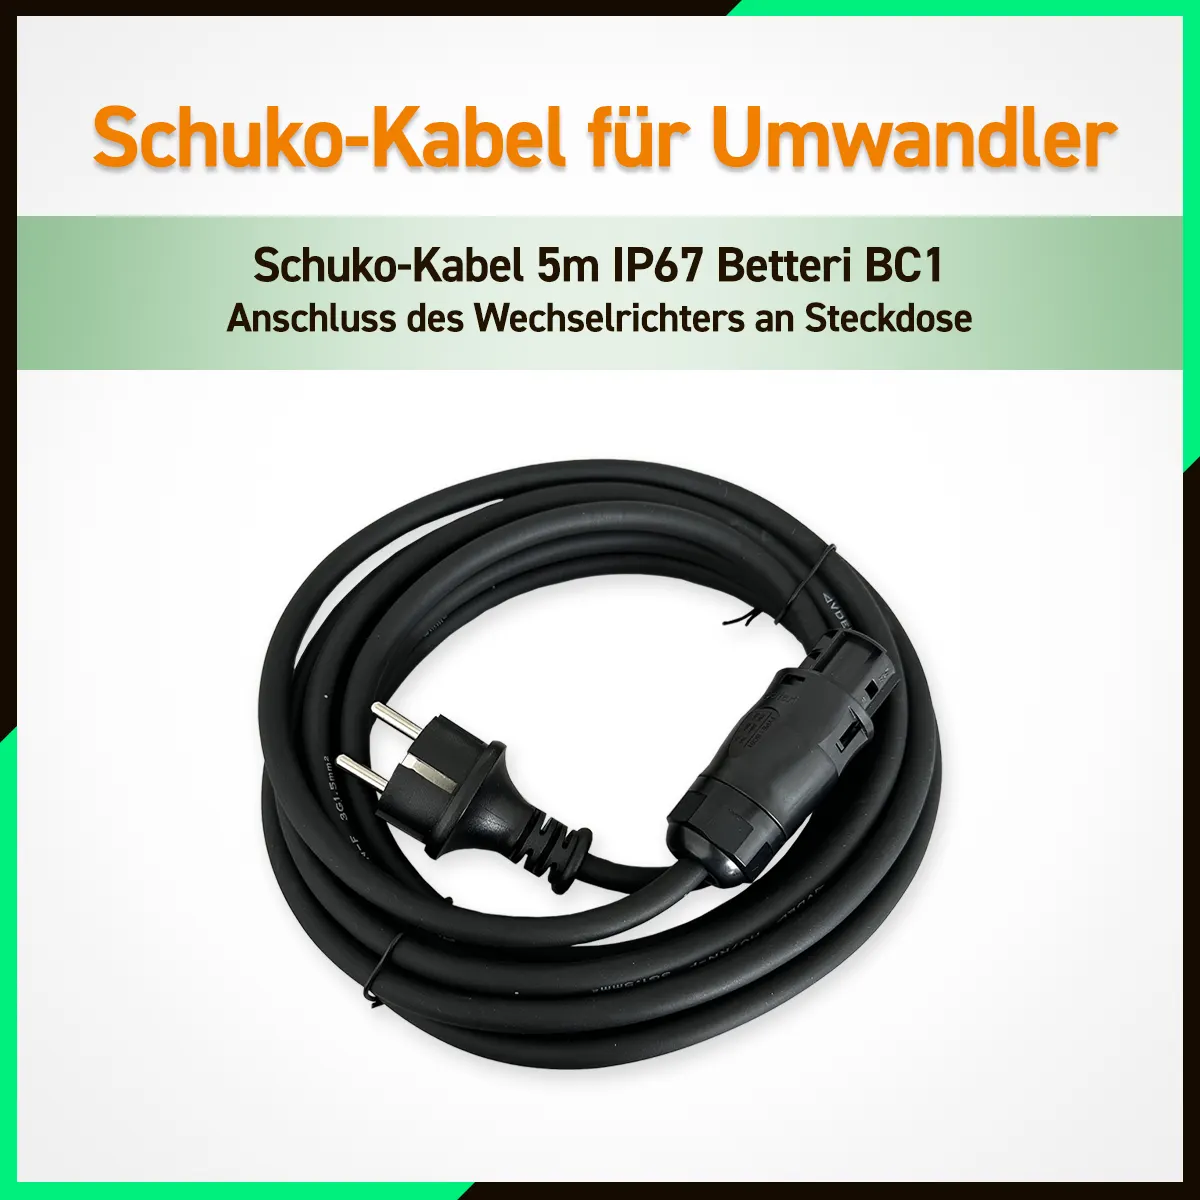 Schuko-Kabel-Anschlusskabel-an-Steckdose-Wechselrichter-Hoymiles-Deye.webp